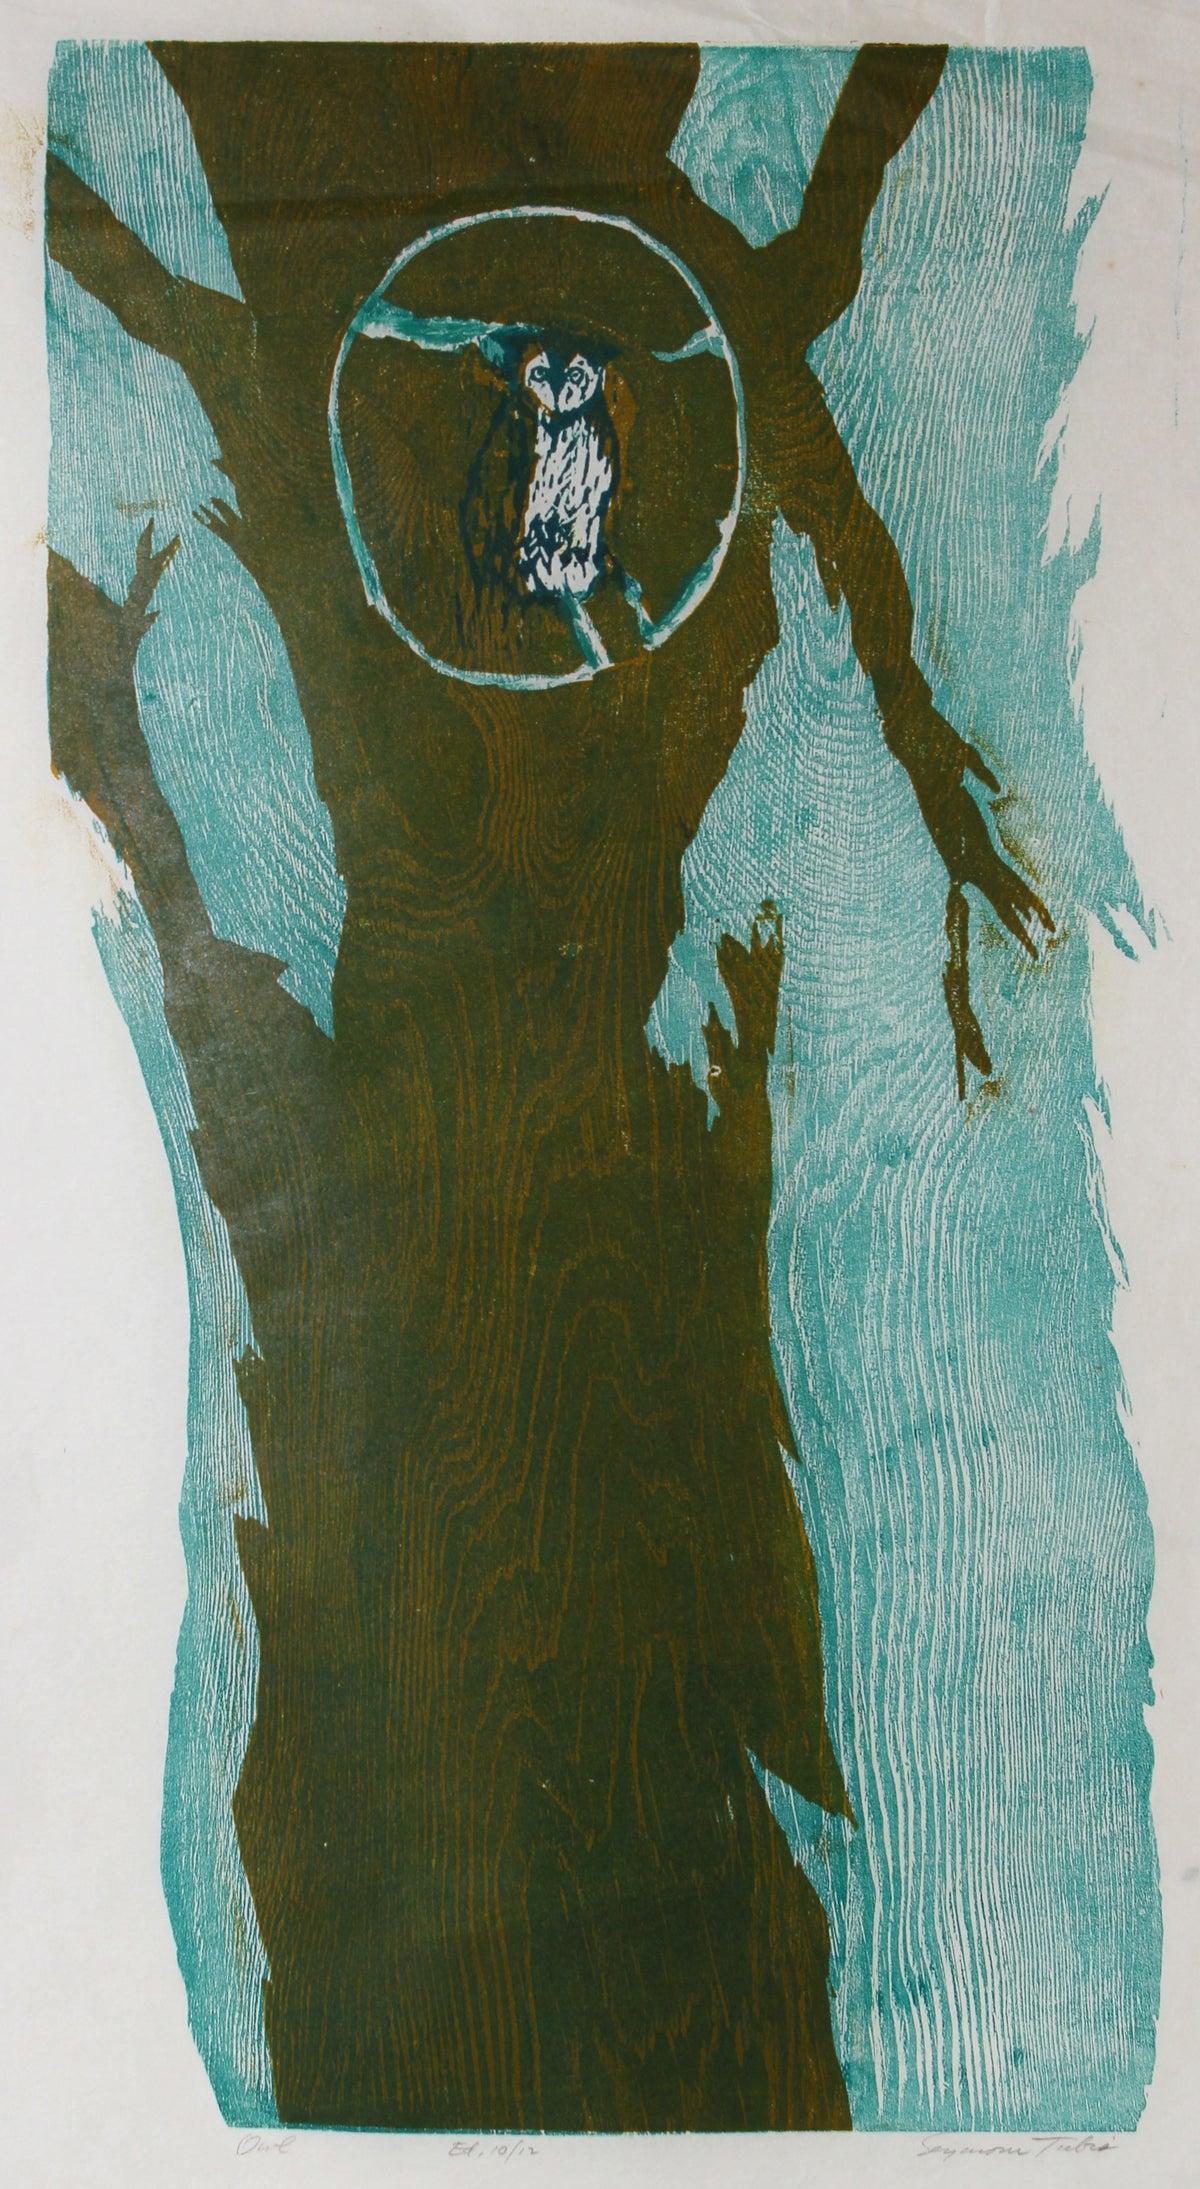 &lt;i&gt;Owl&lt;/i&gt; &lt;br&gt;1950s Woodcut with Blue &lt;br&gt;&lt;br&gt;#62774